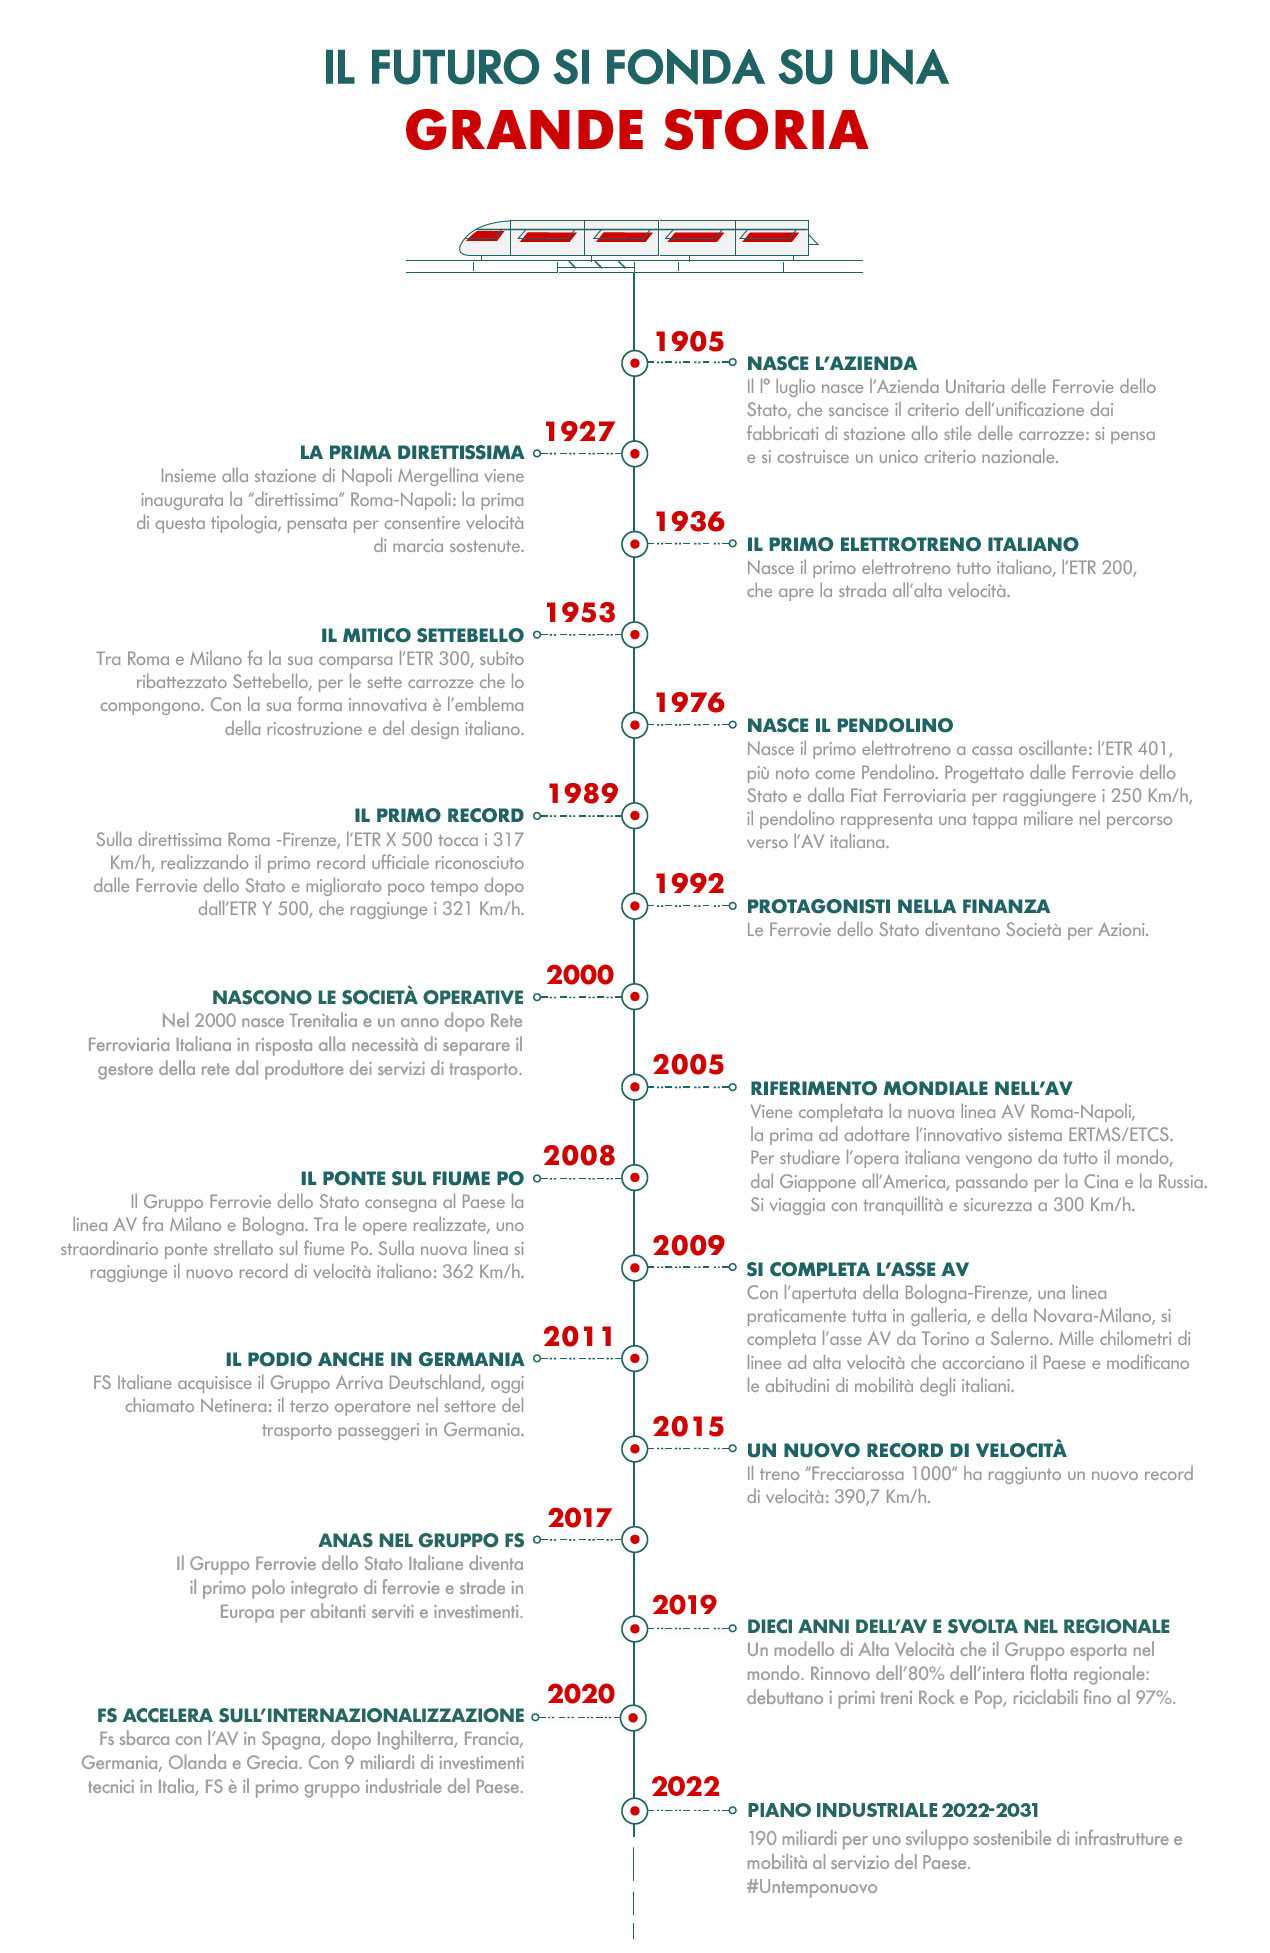 Infografica: Le tappe della storia del Gruppo FS